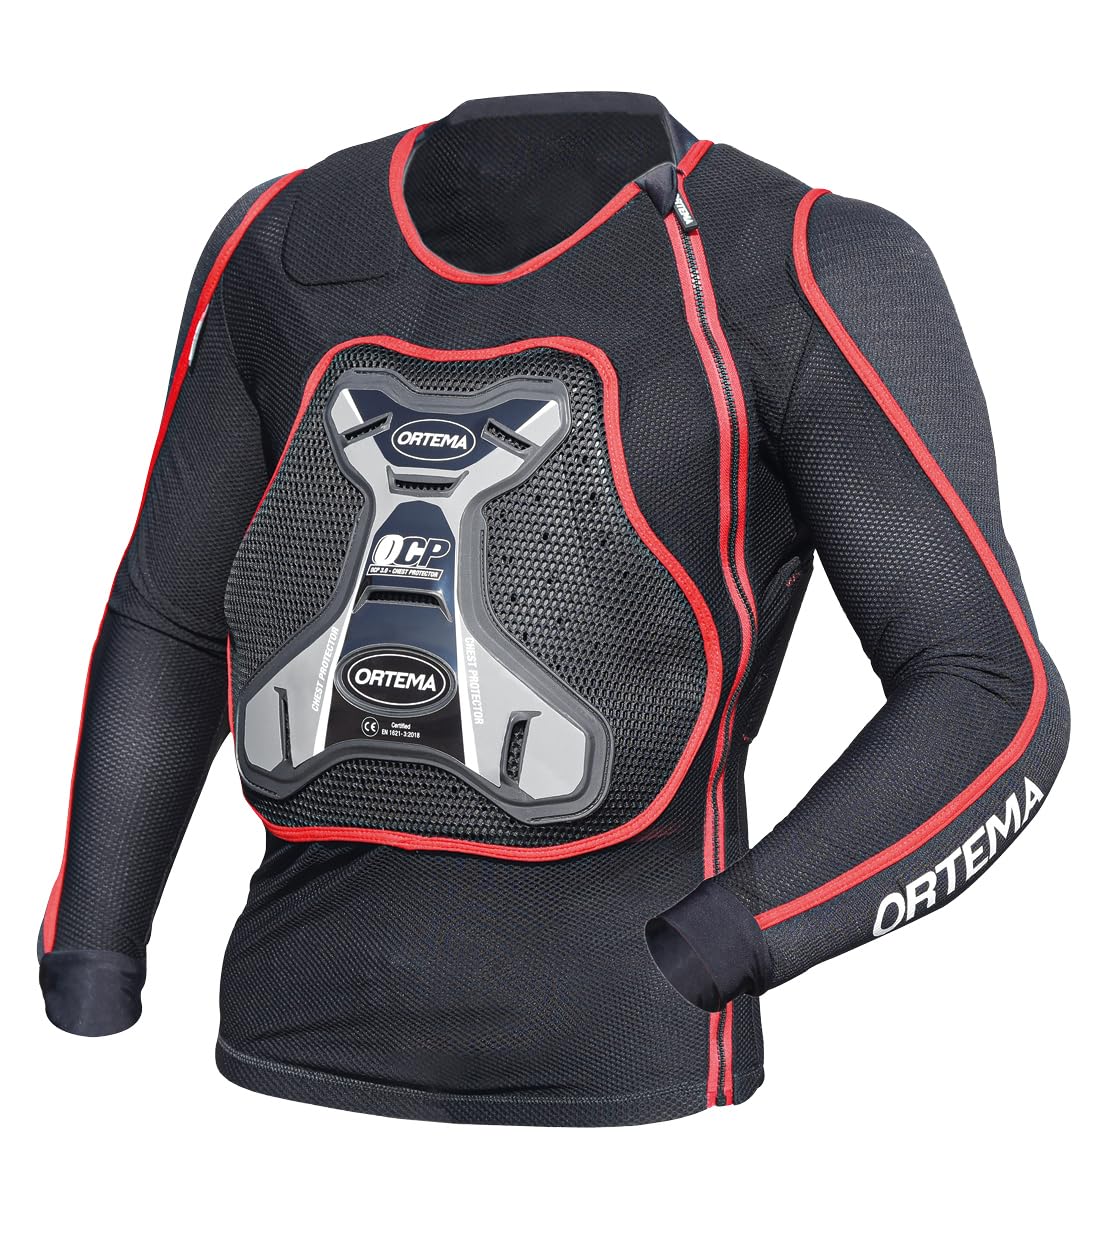 ORTEMA ORTHO-MAX Jacket DUO - Protektorenjacke für den optimalen Rundumschutz - Schützt die Wirbelsäule, Brust, Schultern und Ellenbogen - Motocross/Enduro (XL) von ORTEMA